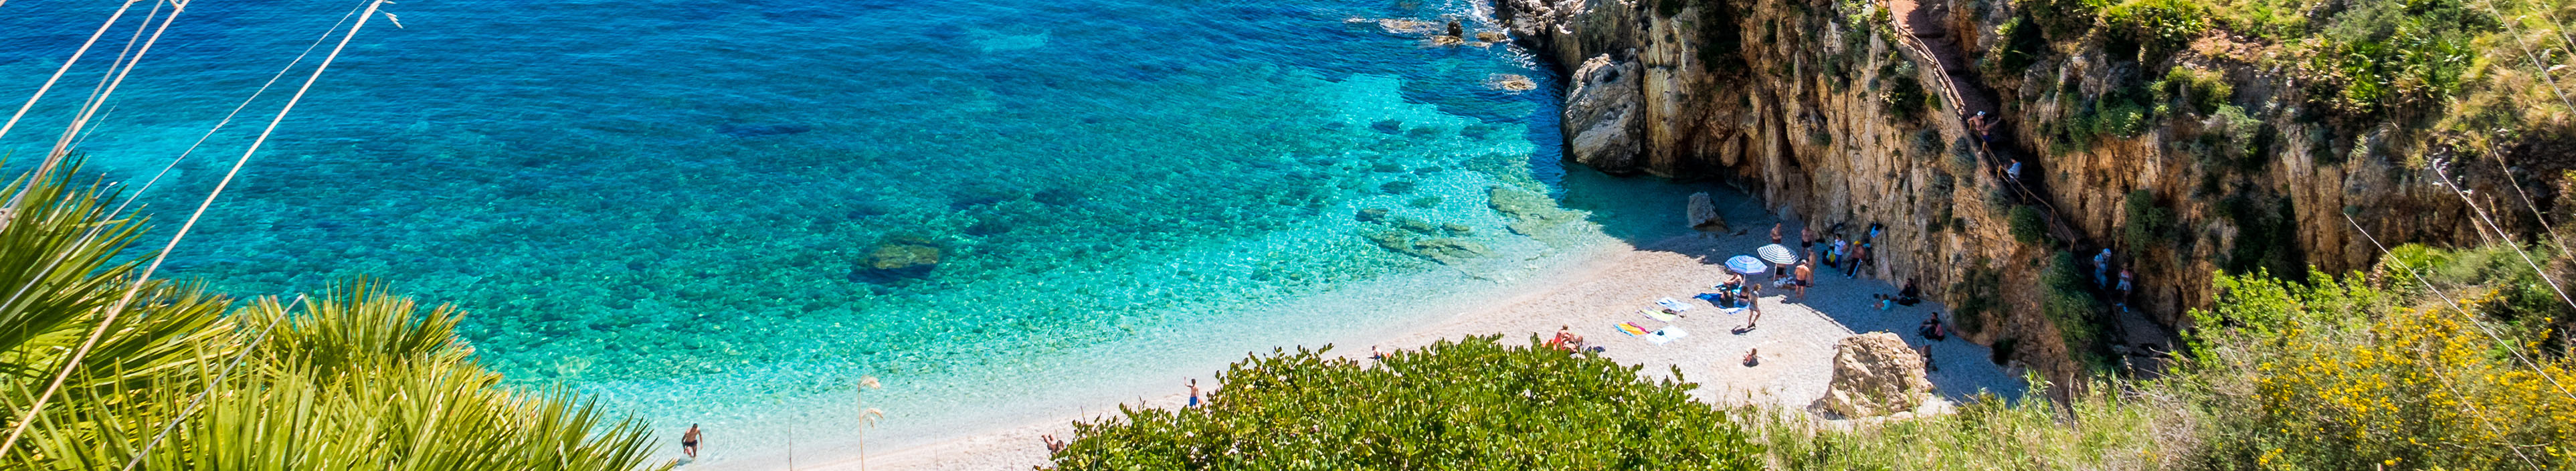 Küstenabschnitt auf Sizilien, blaues Meer, Strand und Felsen.